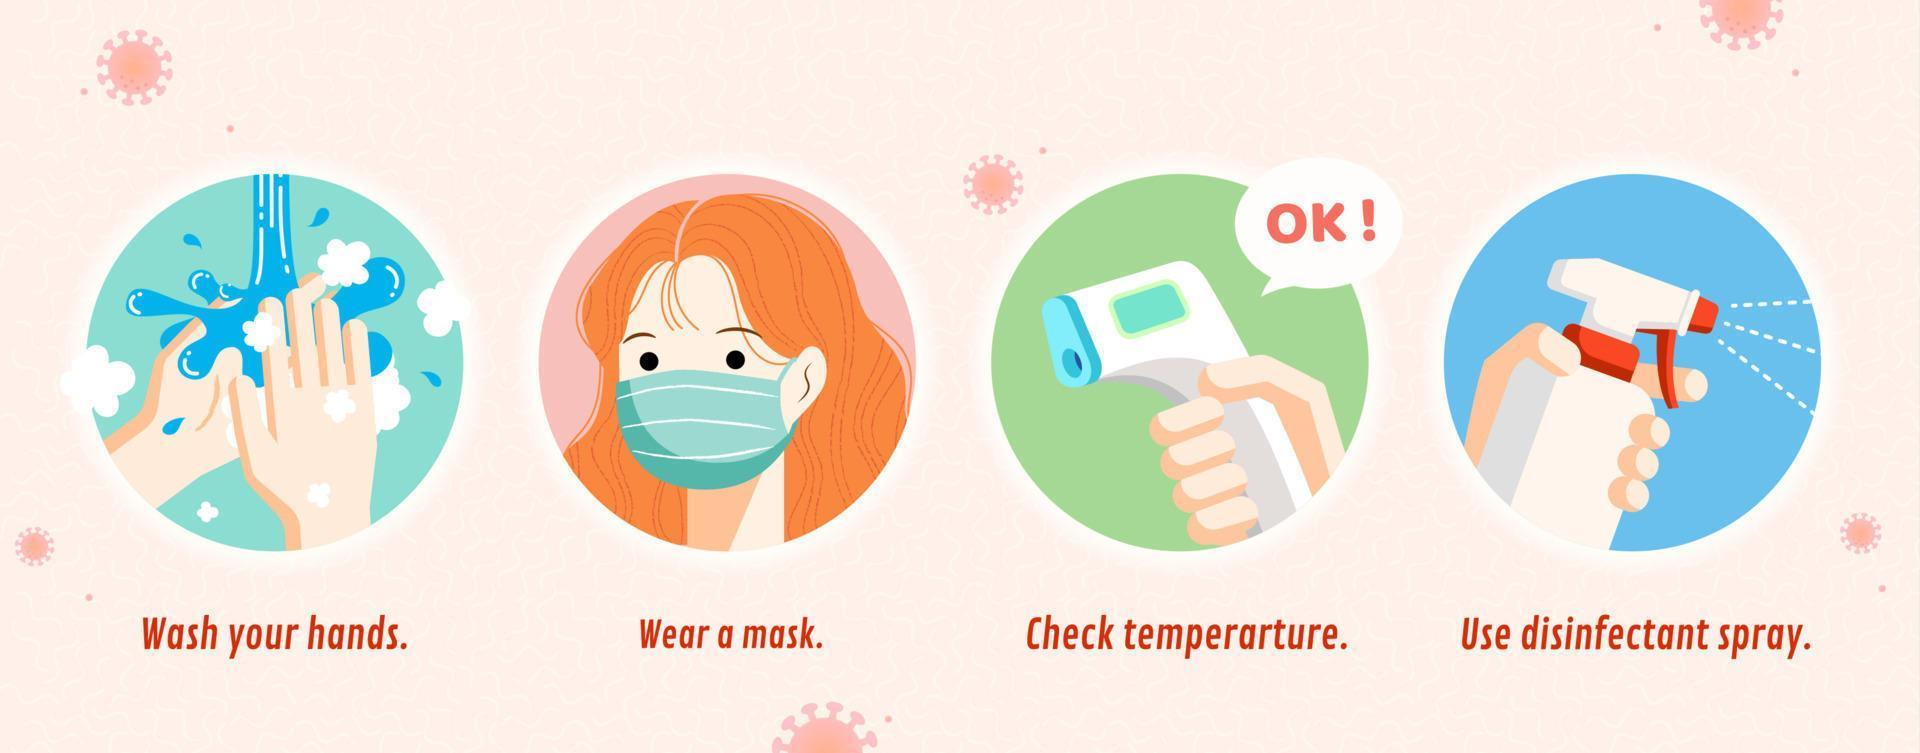 vier einfach Wege zu verhindern Coronavirus einschließlich waschen Hände, tragen ein Maske, prüfen Temperatur und verwenden Desinfektionsmittel sprühen, covid-19 Verhütung eben Illustration Banner vektor